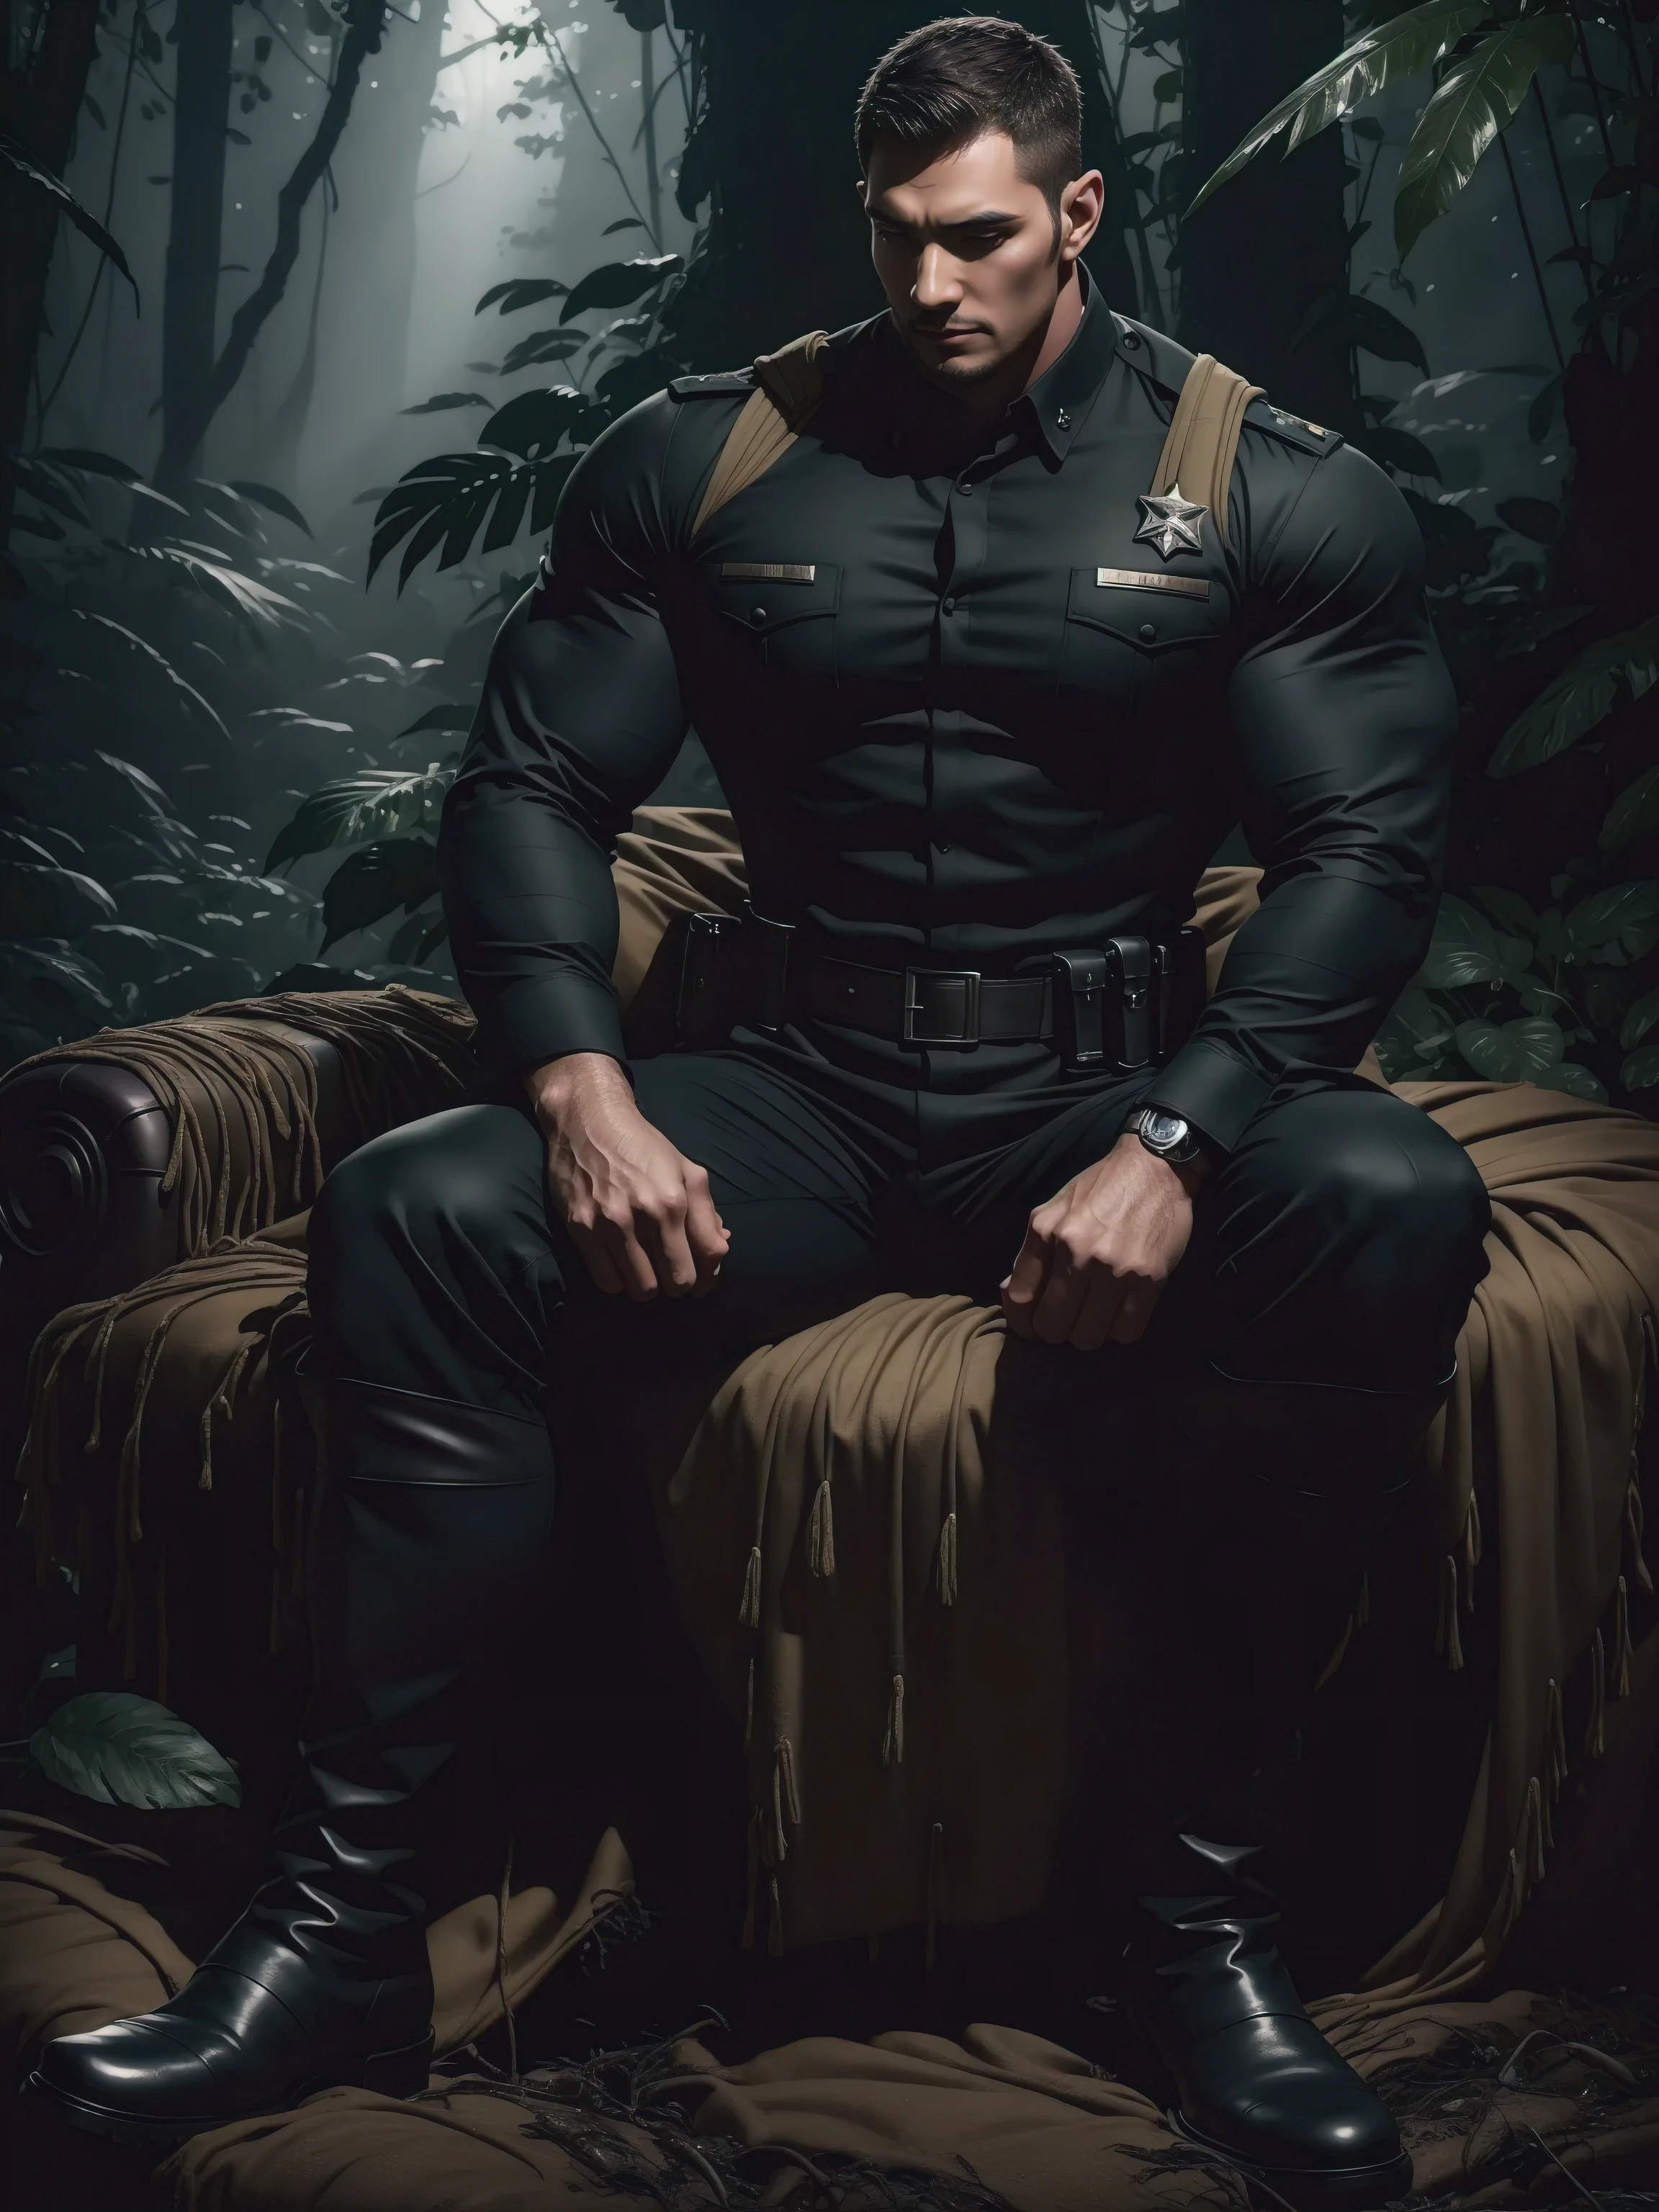 森の中に座っている背の高い巨人の筋肉質の男，濃い黒の軍服，キャラクターデザイン（Resident Evil - クリス・レッドフィールド，クリス・レッドフィールド）彼の髪型はクルーカットです，身穿濃い黒の軍服，マットな質感，柔らかくて快適なソファ，不気味なサトウキビのジャングルに座る, 本体は厚い籐で包まれている，悲しい表情，深くて魅力的な目，サファイアの目の男性主人公，勇敢な男性的なポーズ，背が高くてがっしりした体格，筋肉質の！魅力的な脚の筋肉，高い, がっしりした, 強い， 身穿濃い黒の軍服， スーパーゲインとクール， 高解像度の委託， 黒いブーツを履いた大きな足，魅力的な強い男，明るい太陽の光が体を照らす，光沢のある質感のマット粒子